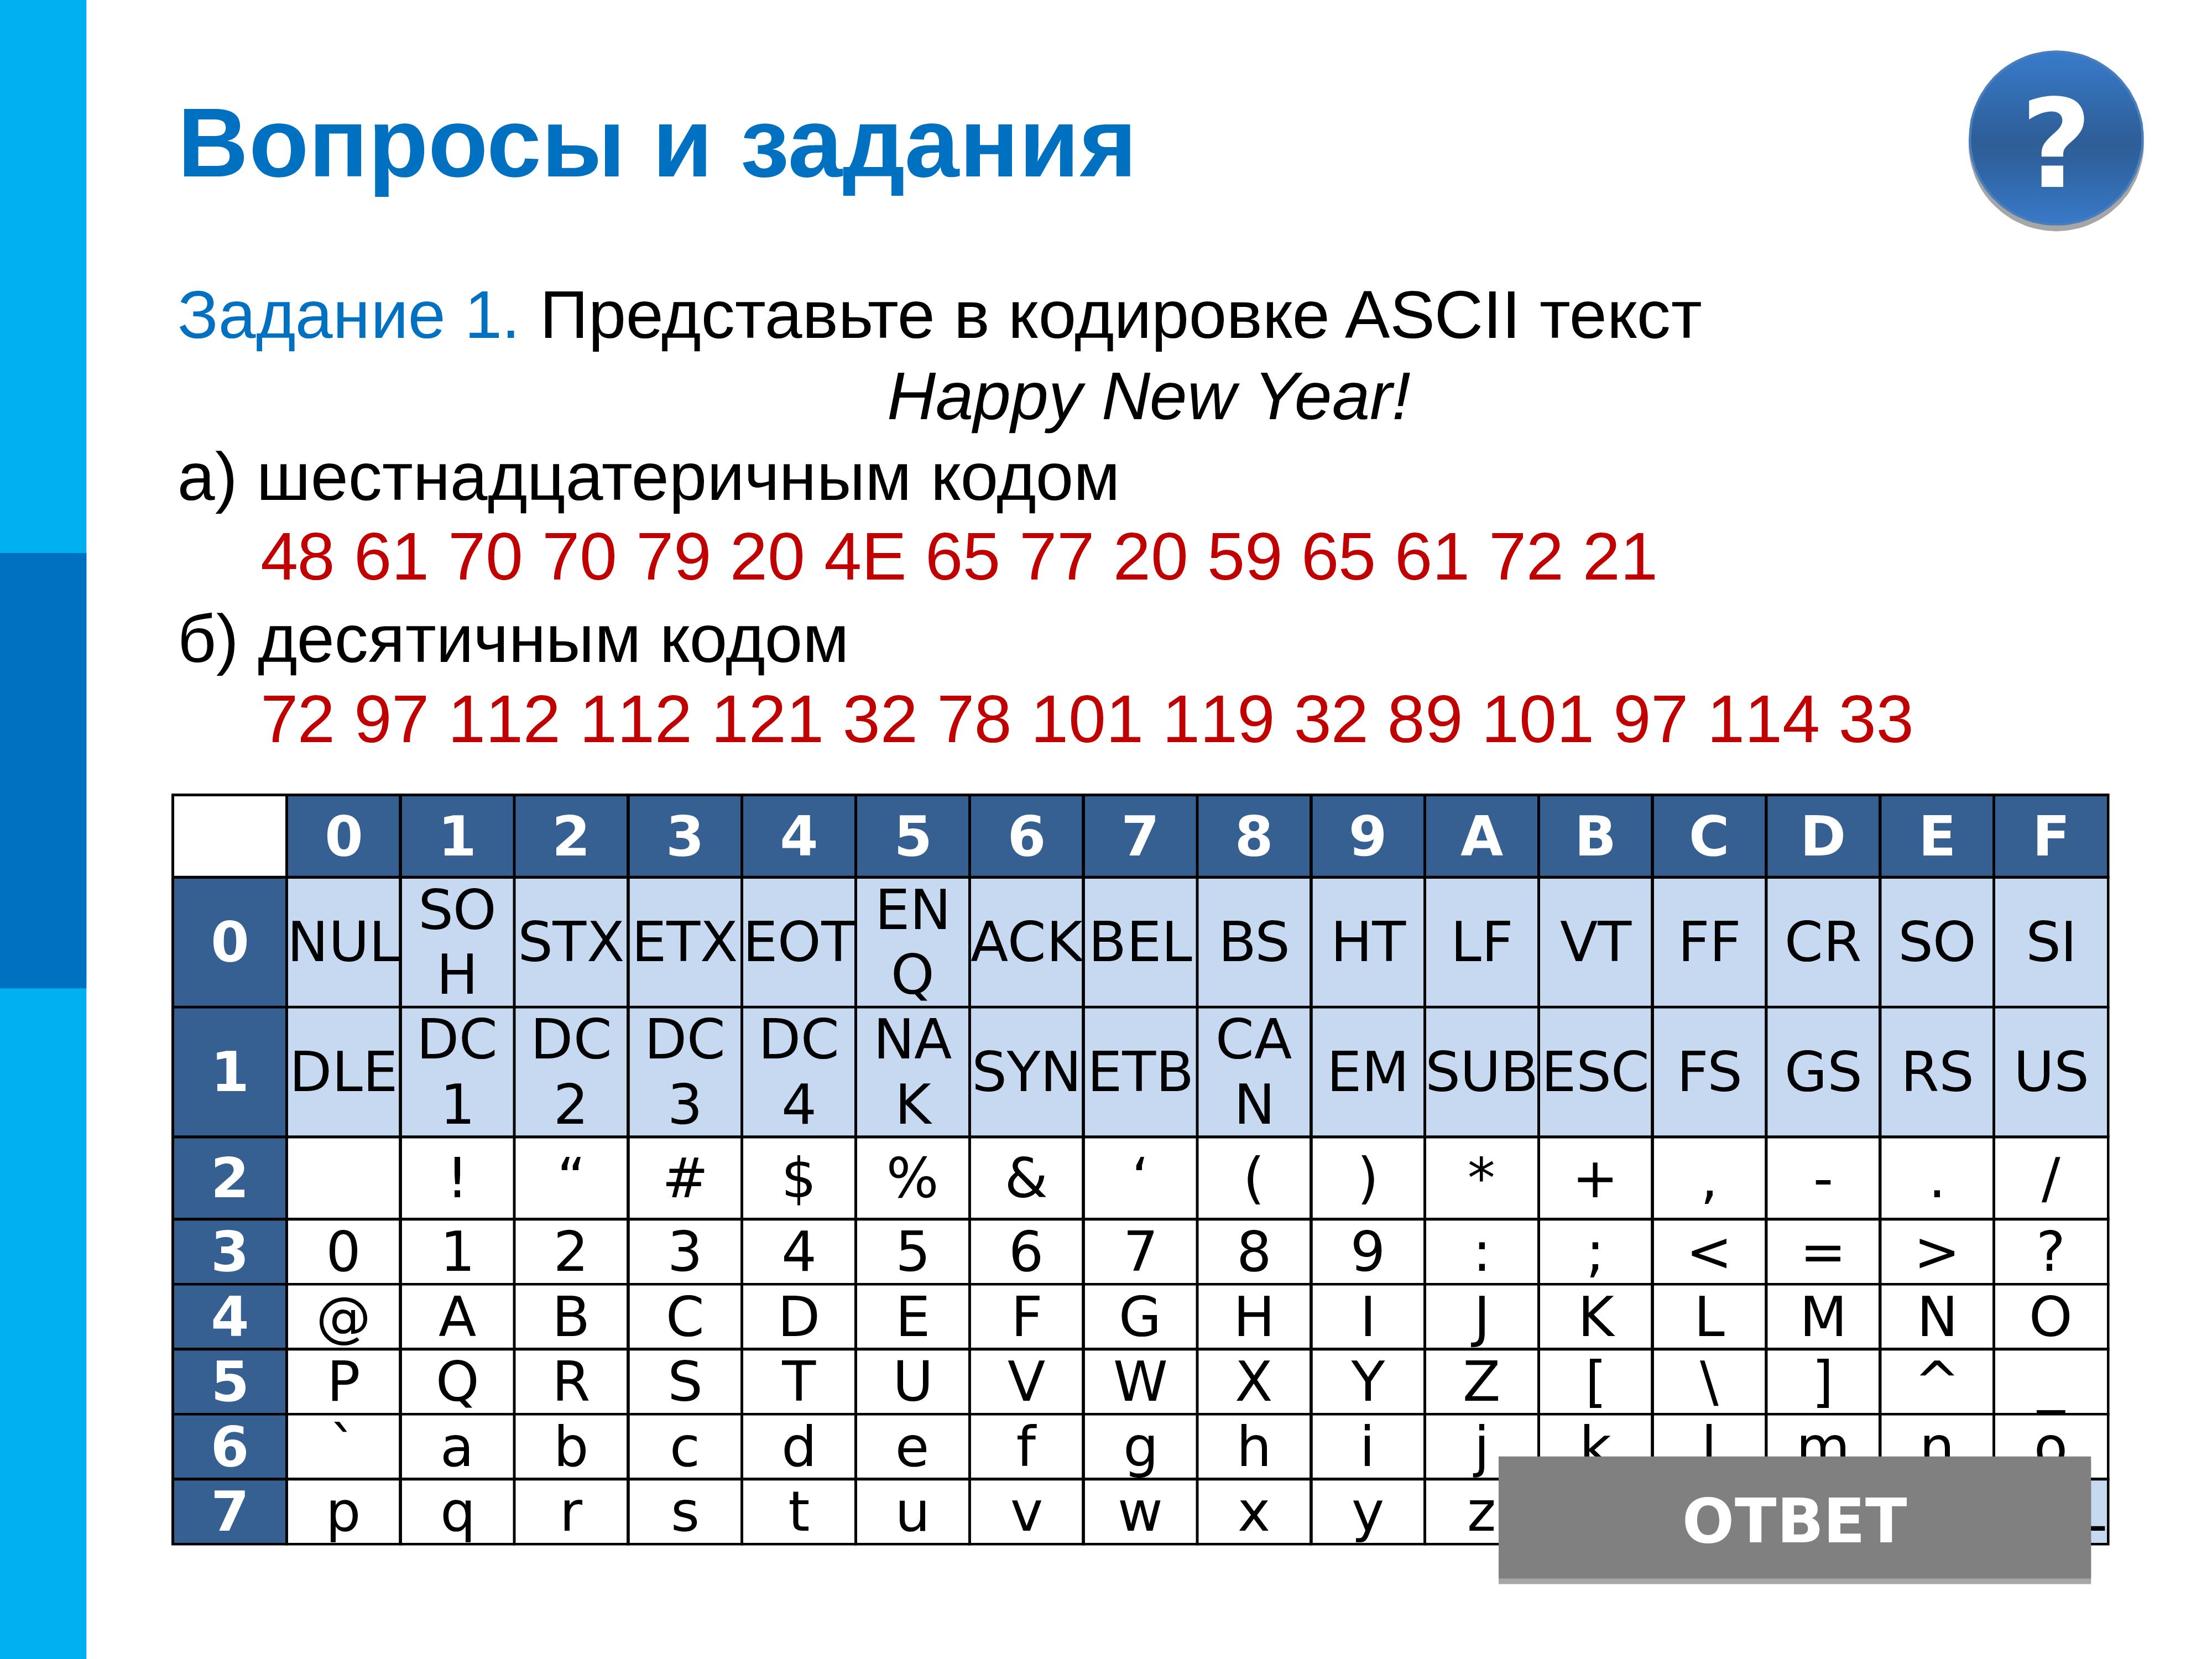 Шестнадцатеричный код в текст. Кодировка ASCII шестнадцатеричный код. Представьте в кодировке ASCII текст Happy New year. Кодирование информации в шестнадцатеричном коде. Шестнадцатеричное представление кода.